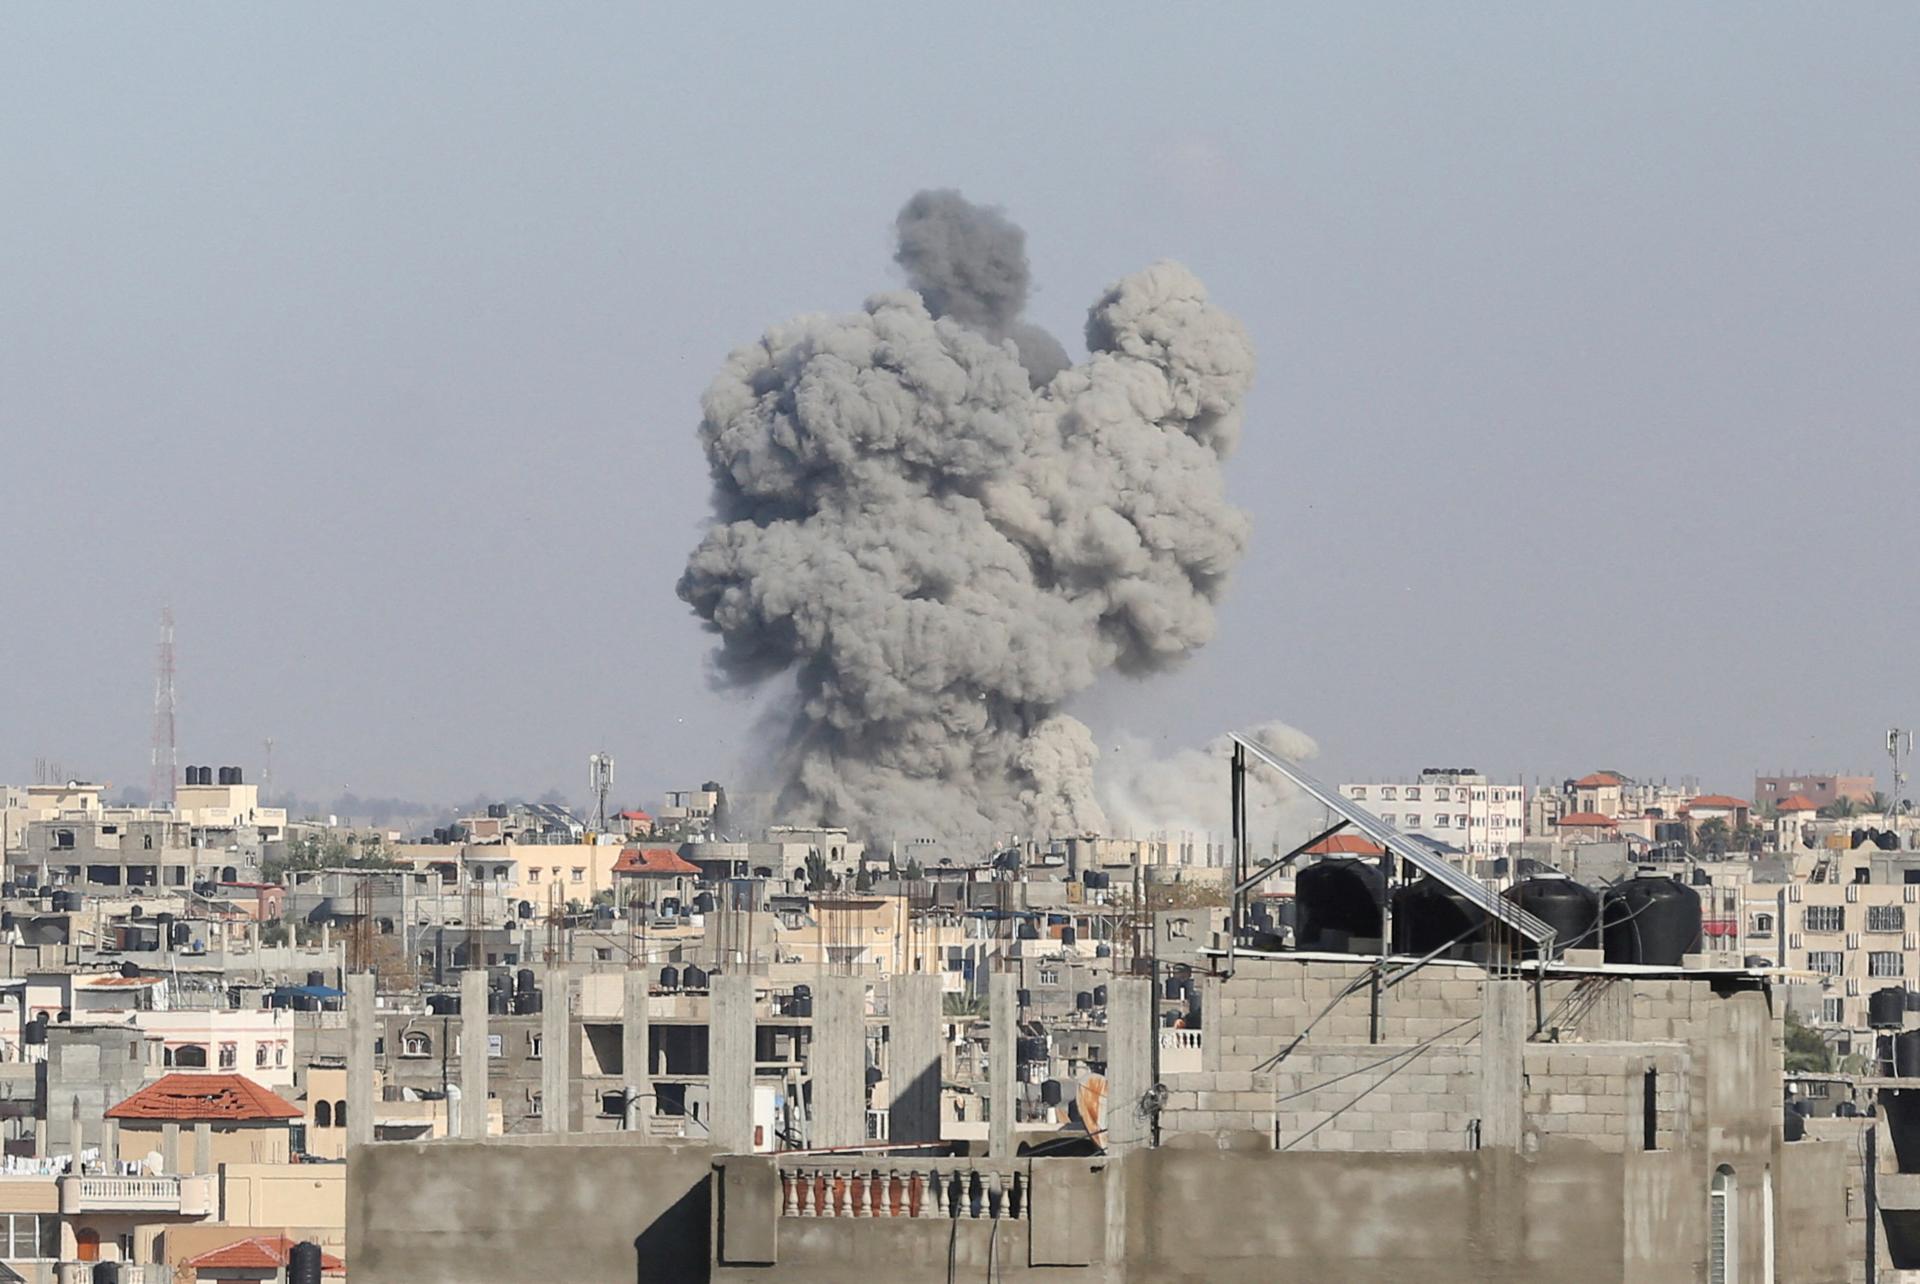 USA ponúkajú Izraelu spravodajské informácie, aby obmedzil svoju inváziu v Rafahu, píše Washington Post